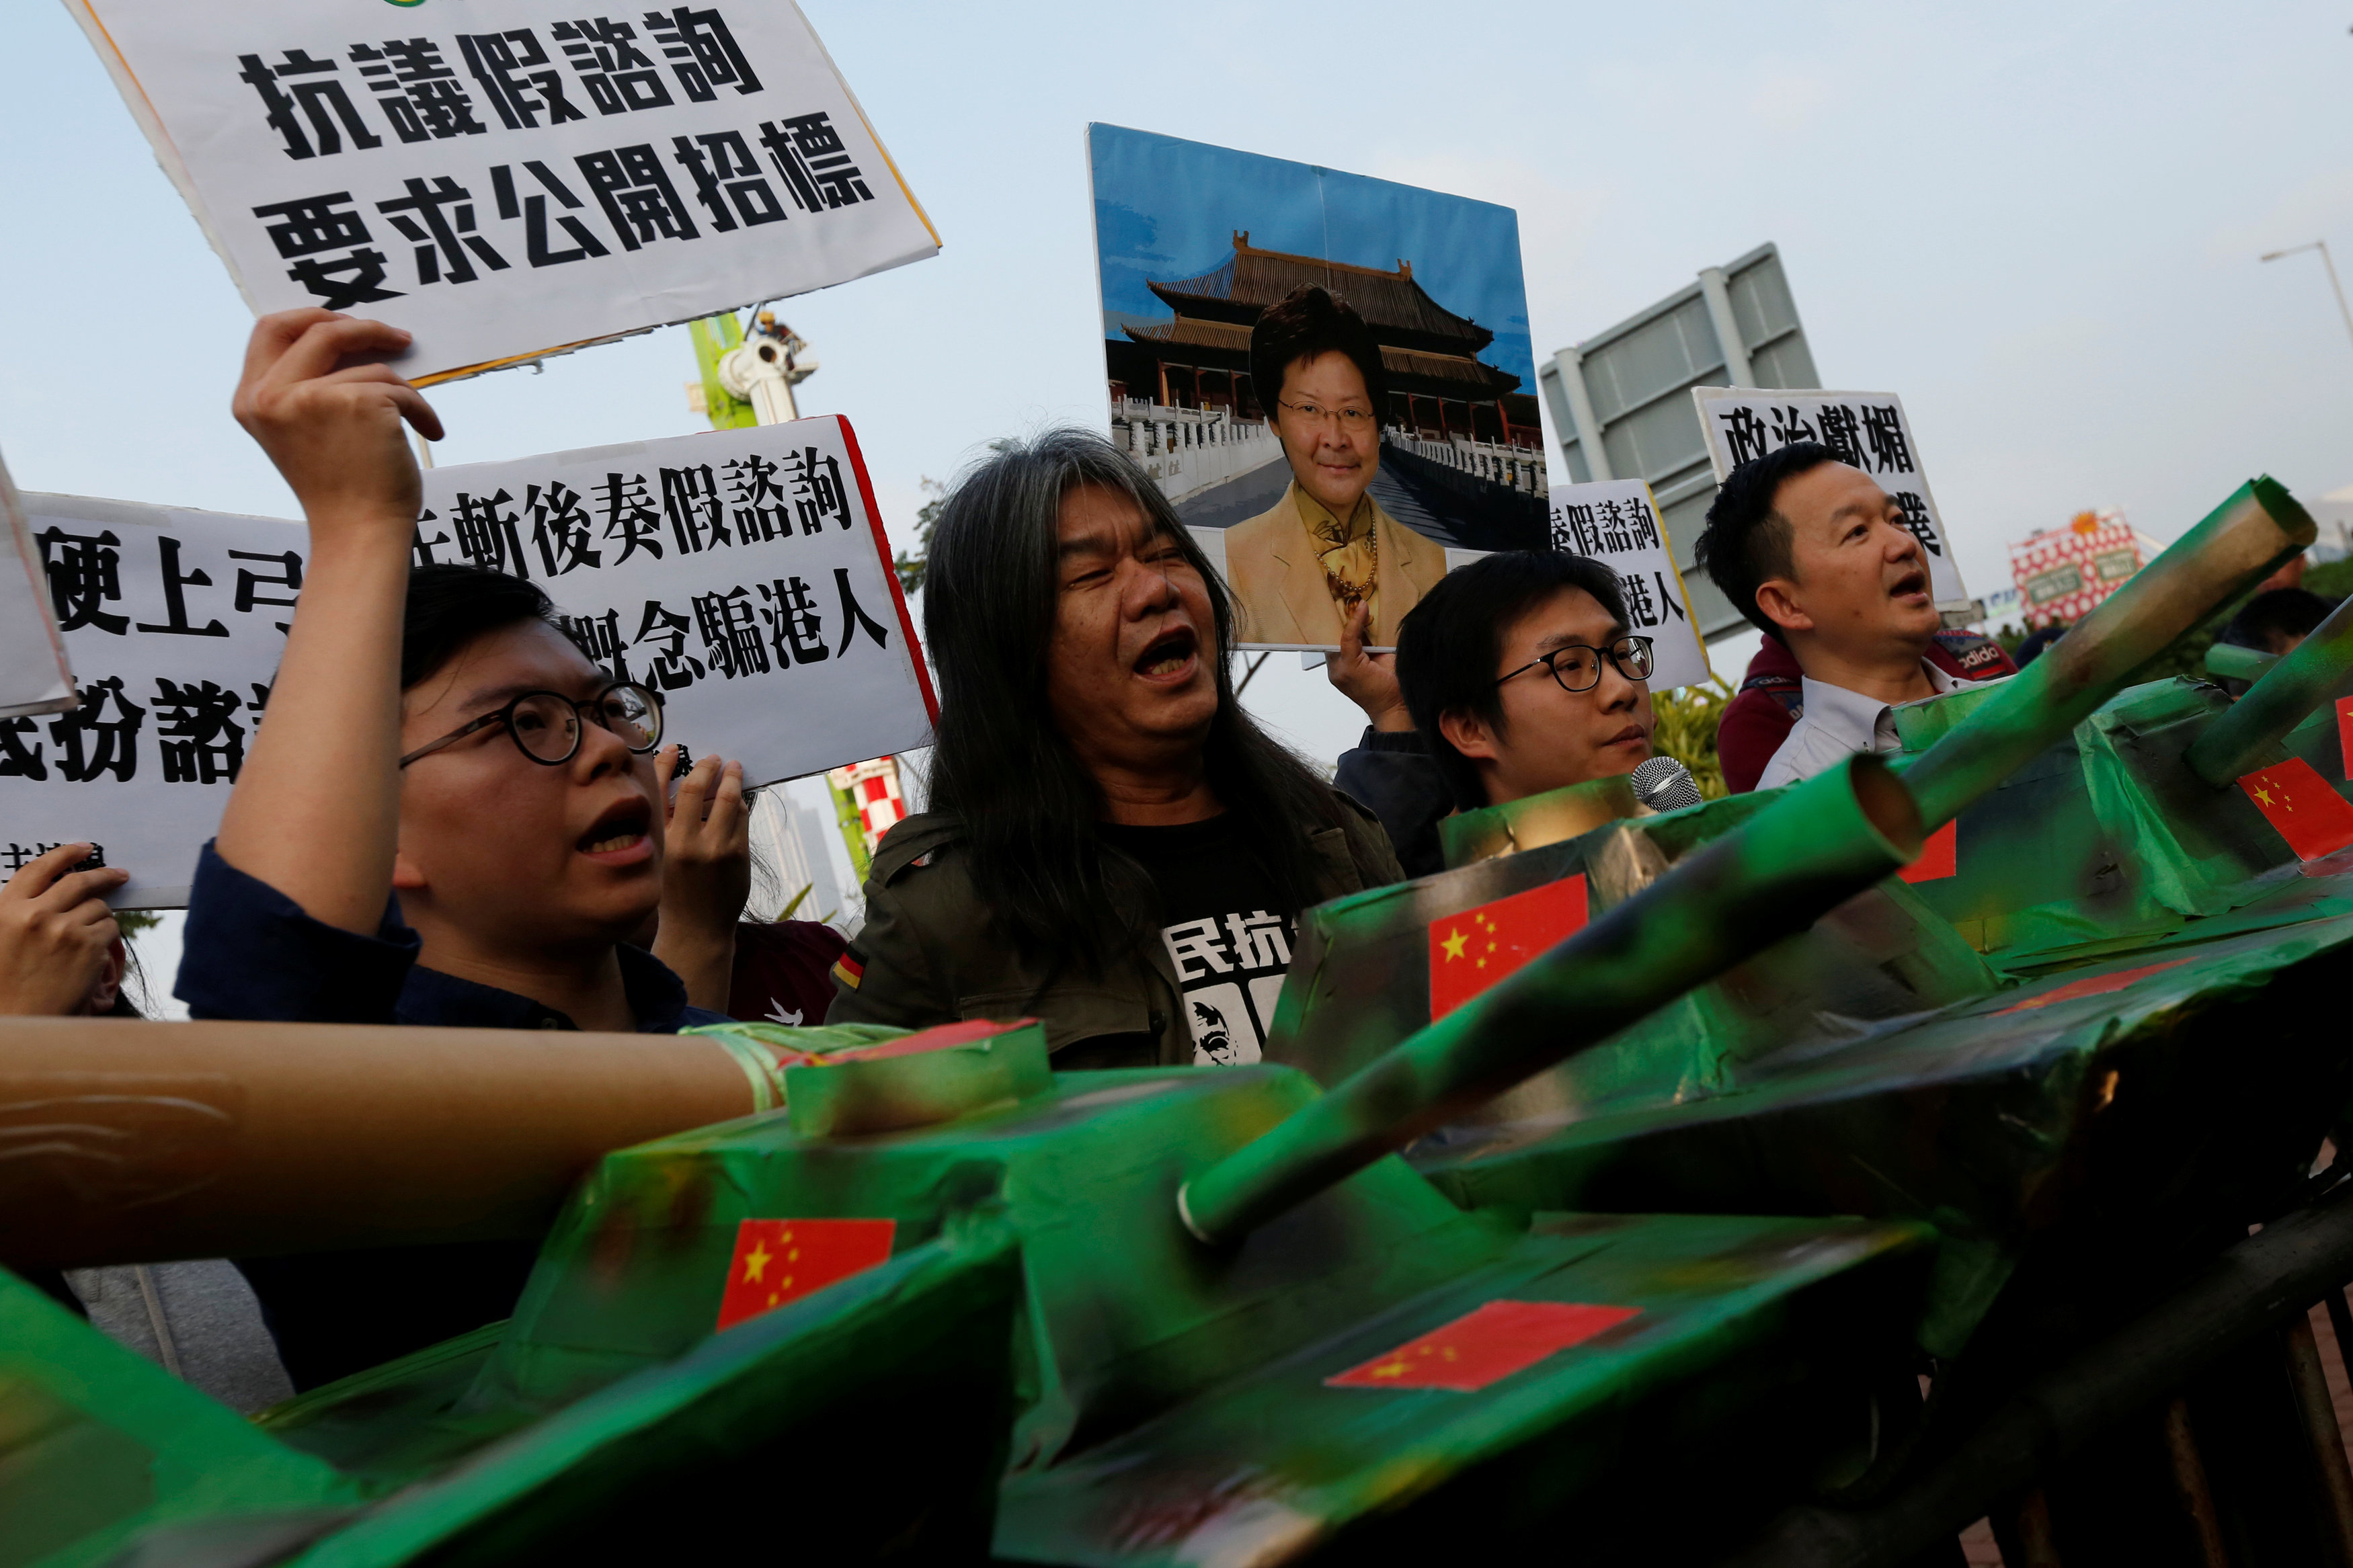 مواطنون يتظاهرون احتجاجا ضد خطة بناء فرع لمتحف القصر فى هونج كونج